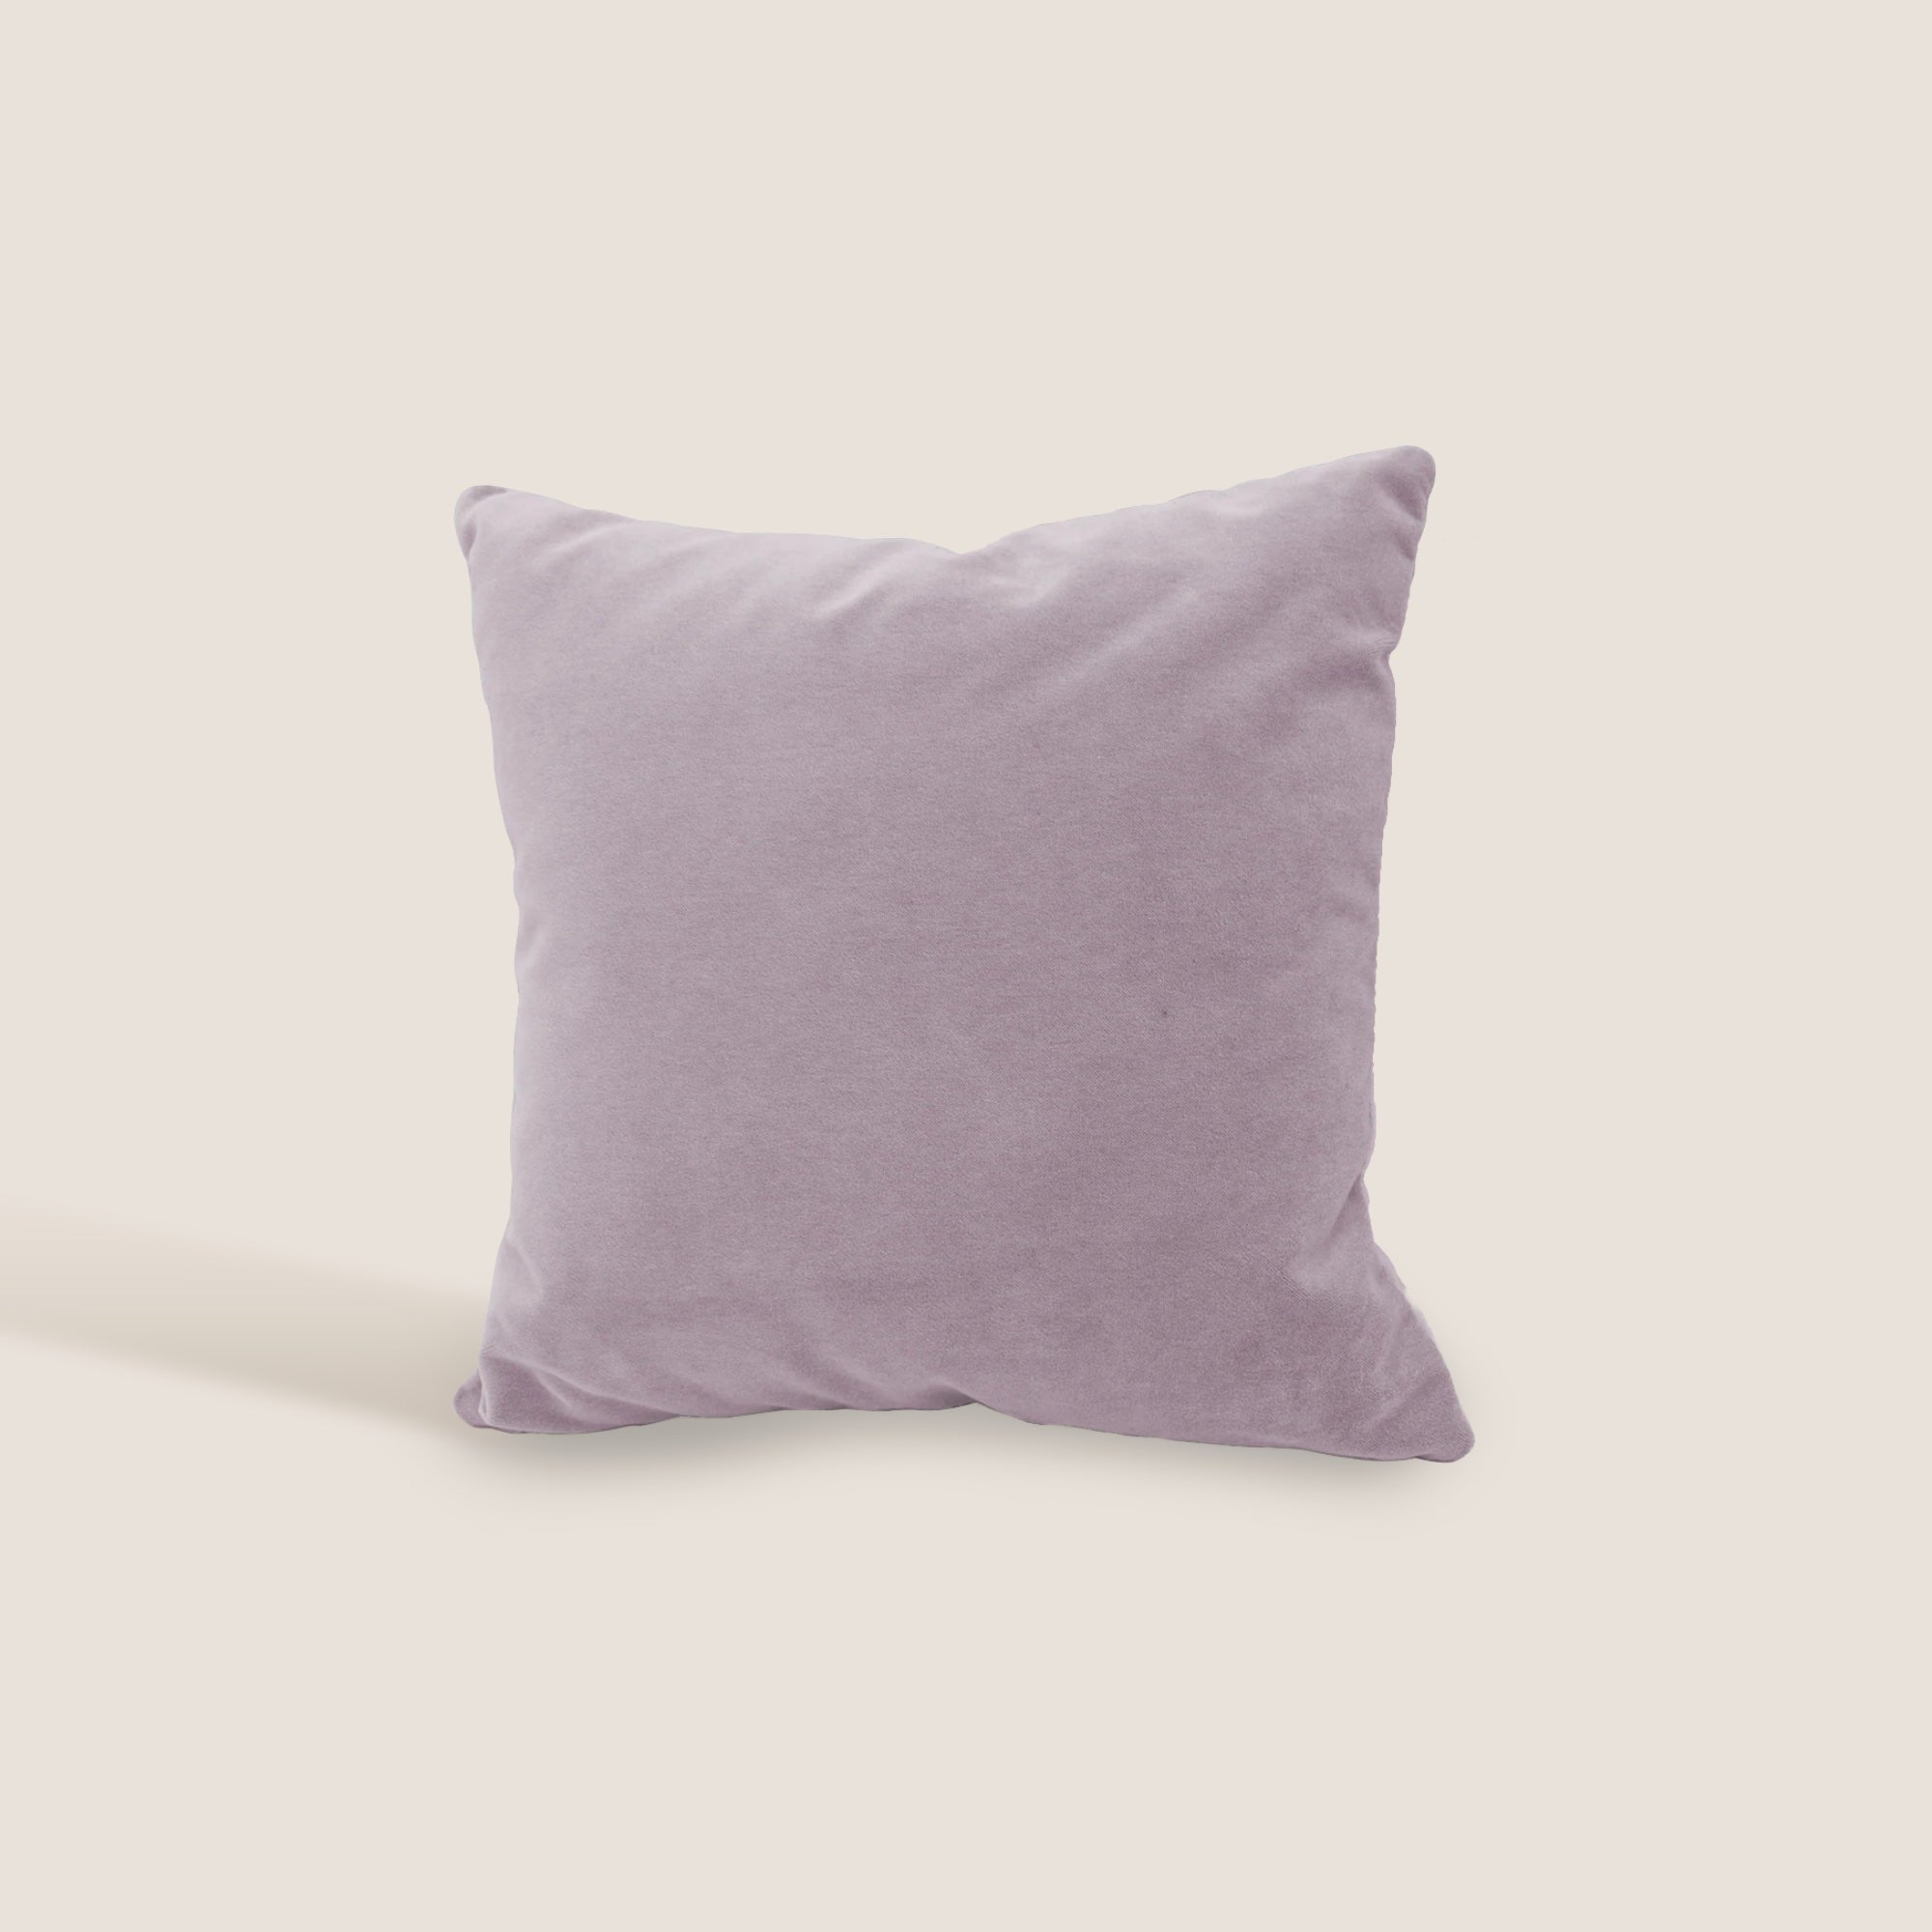 Luxury cuscino quadrato in velluto misto cotone T09 disponibile in diversi colori